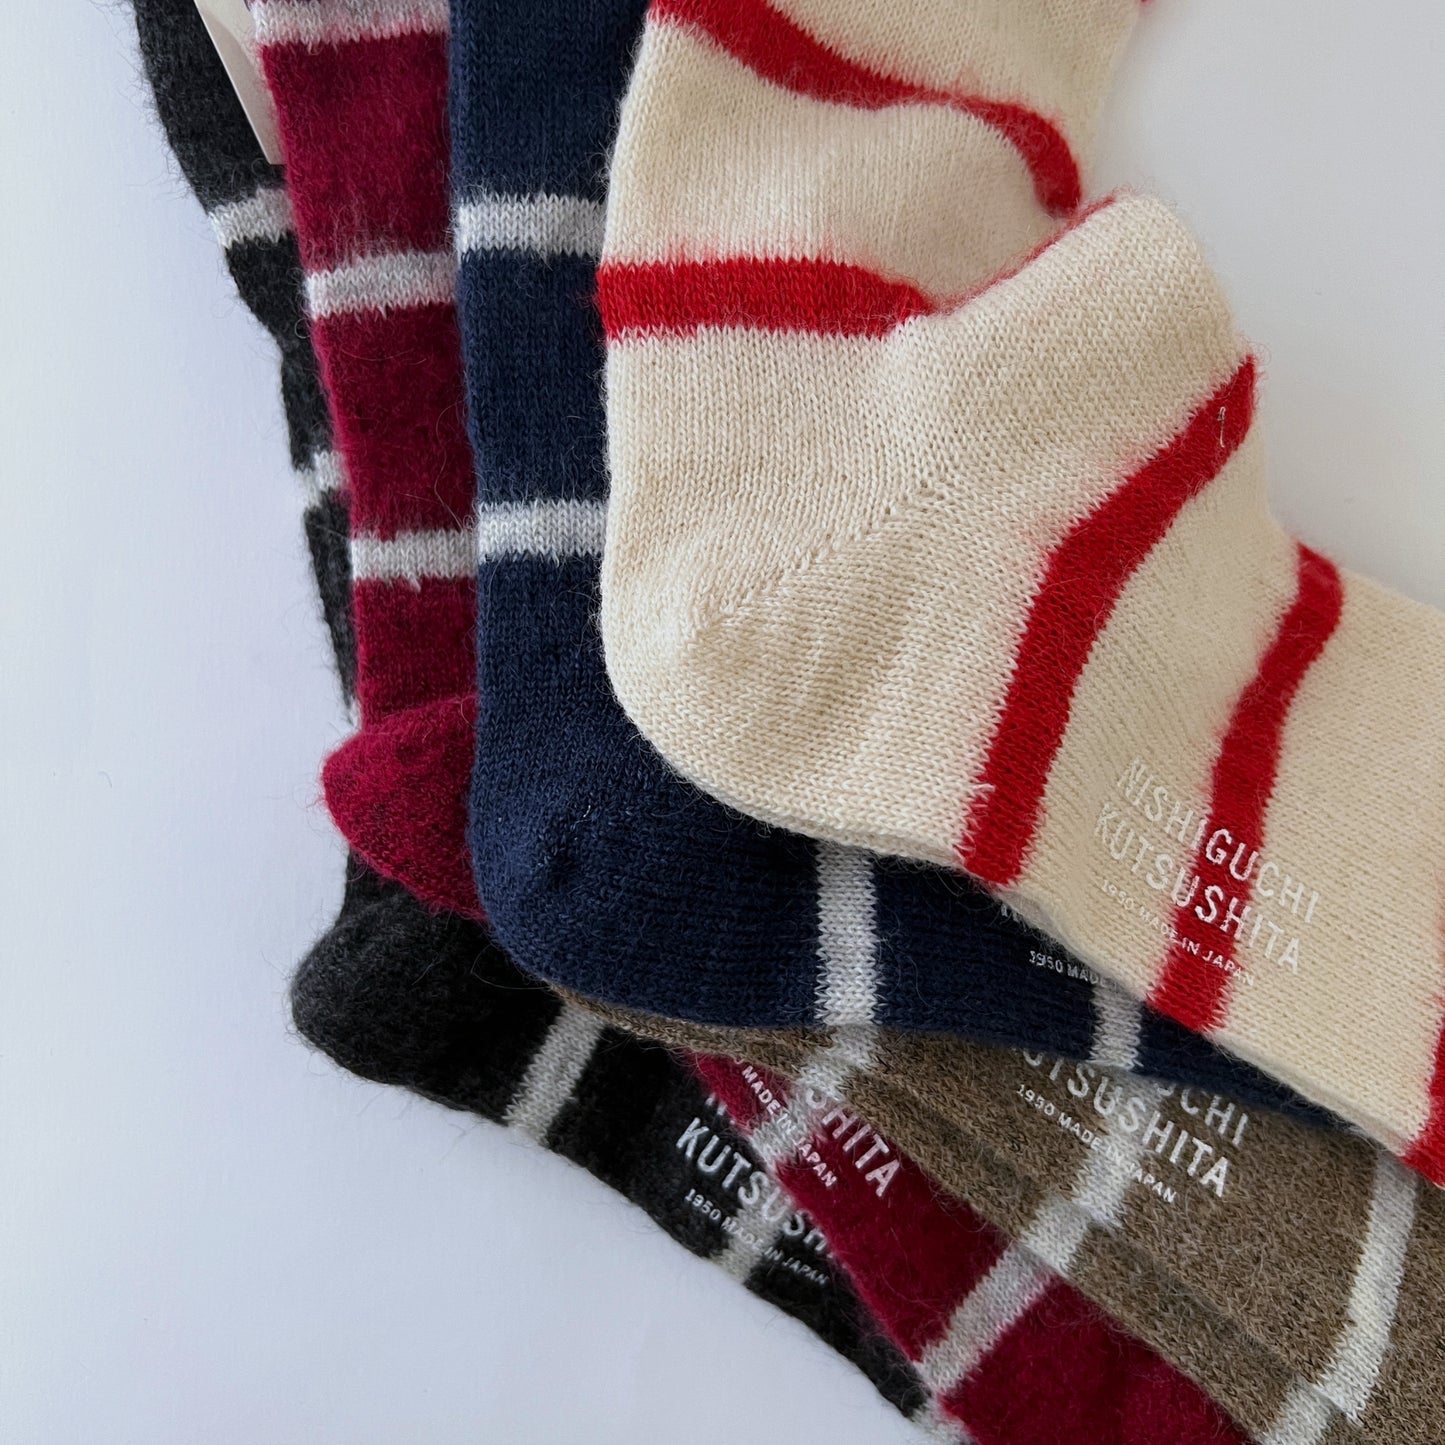 NISHIGUCHI KUTSUSHITA : oslo mohair wool border sock